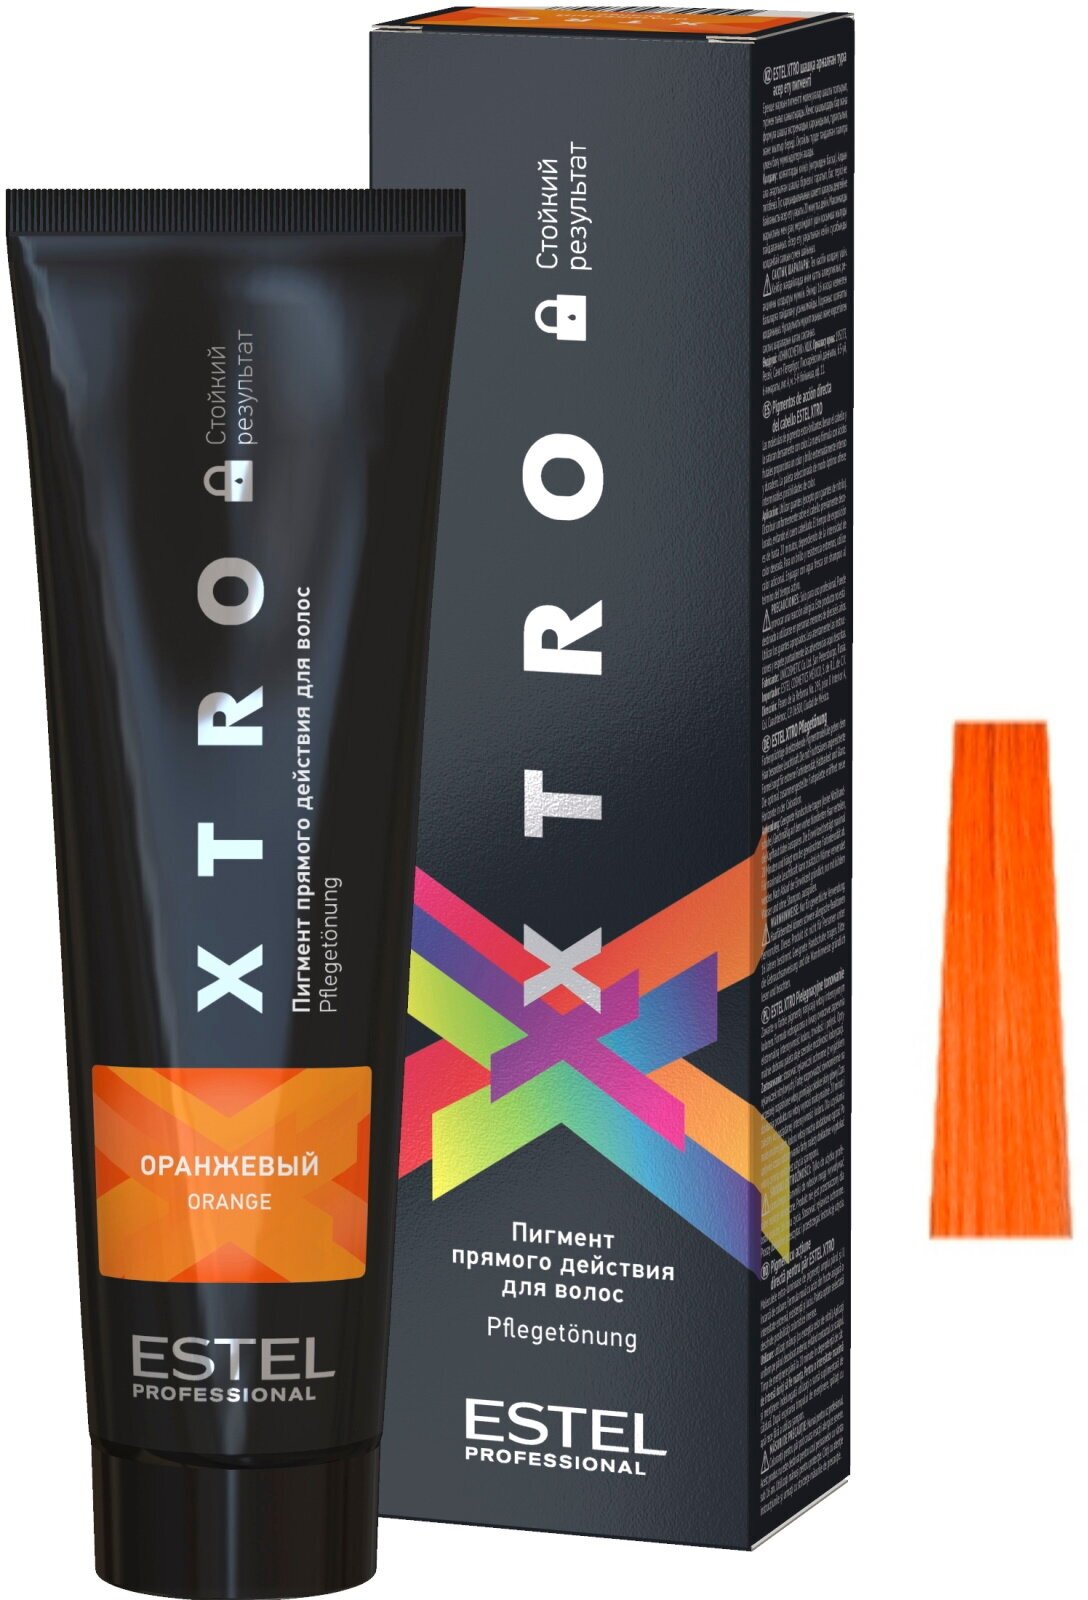 ESTEL PROFESSIONAL, ESTEL XTRO BLACK, Пигмент прямого действия для волос, оранжевый, 100 мл